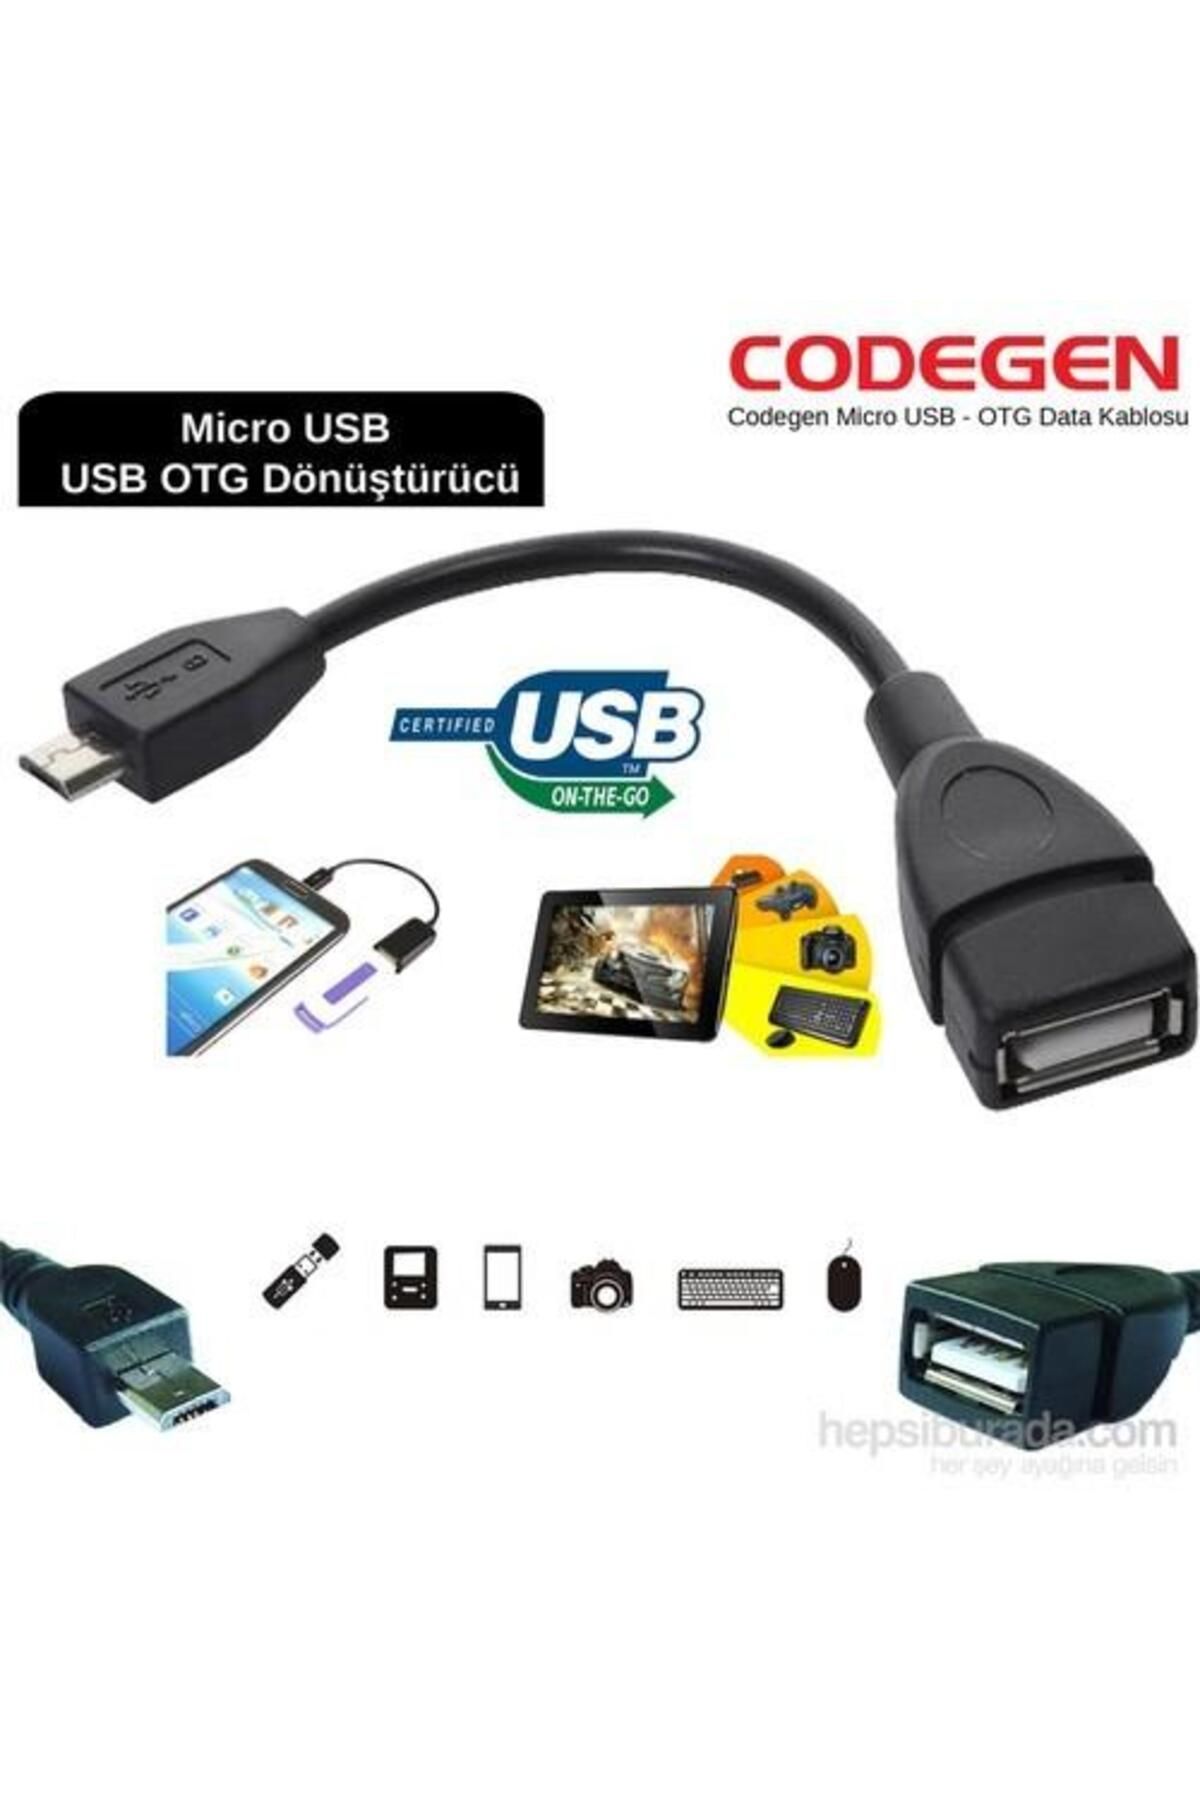 CODEGEN Micro Usb 2.0 Tablet Ve Akıllı Telefon Usb Dönüştürücü Çevirici Otg Kablo